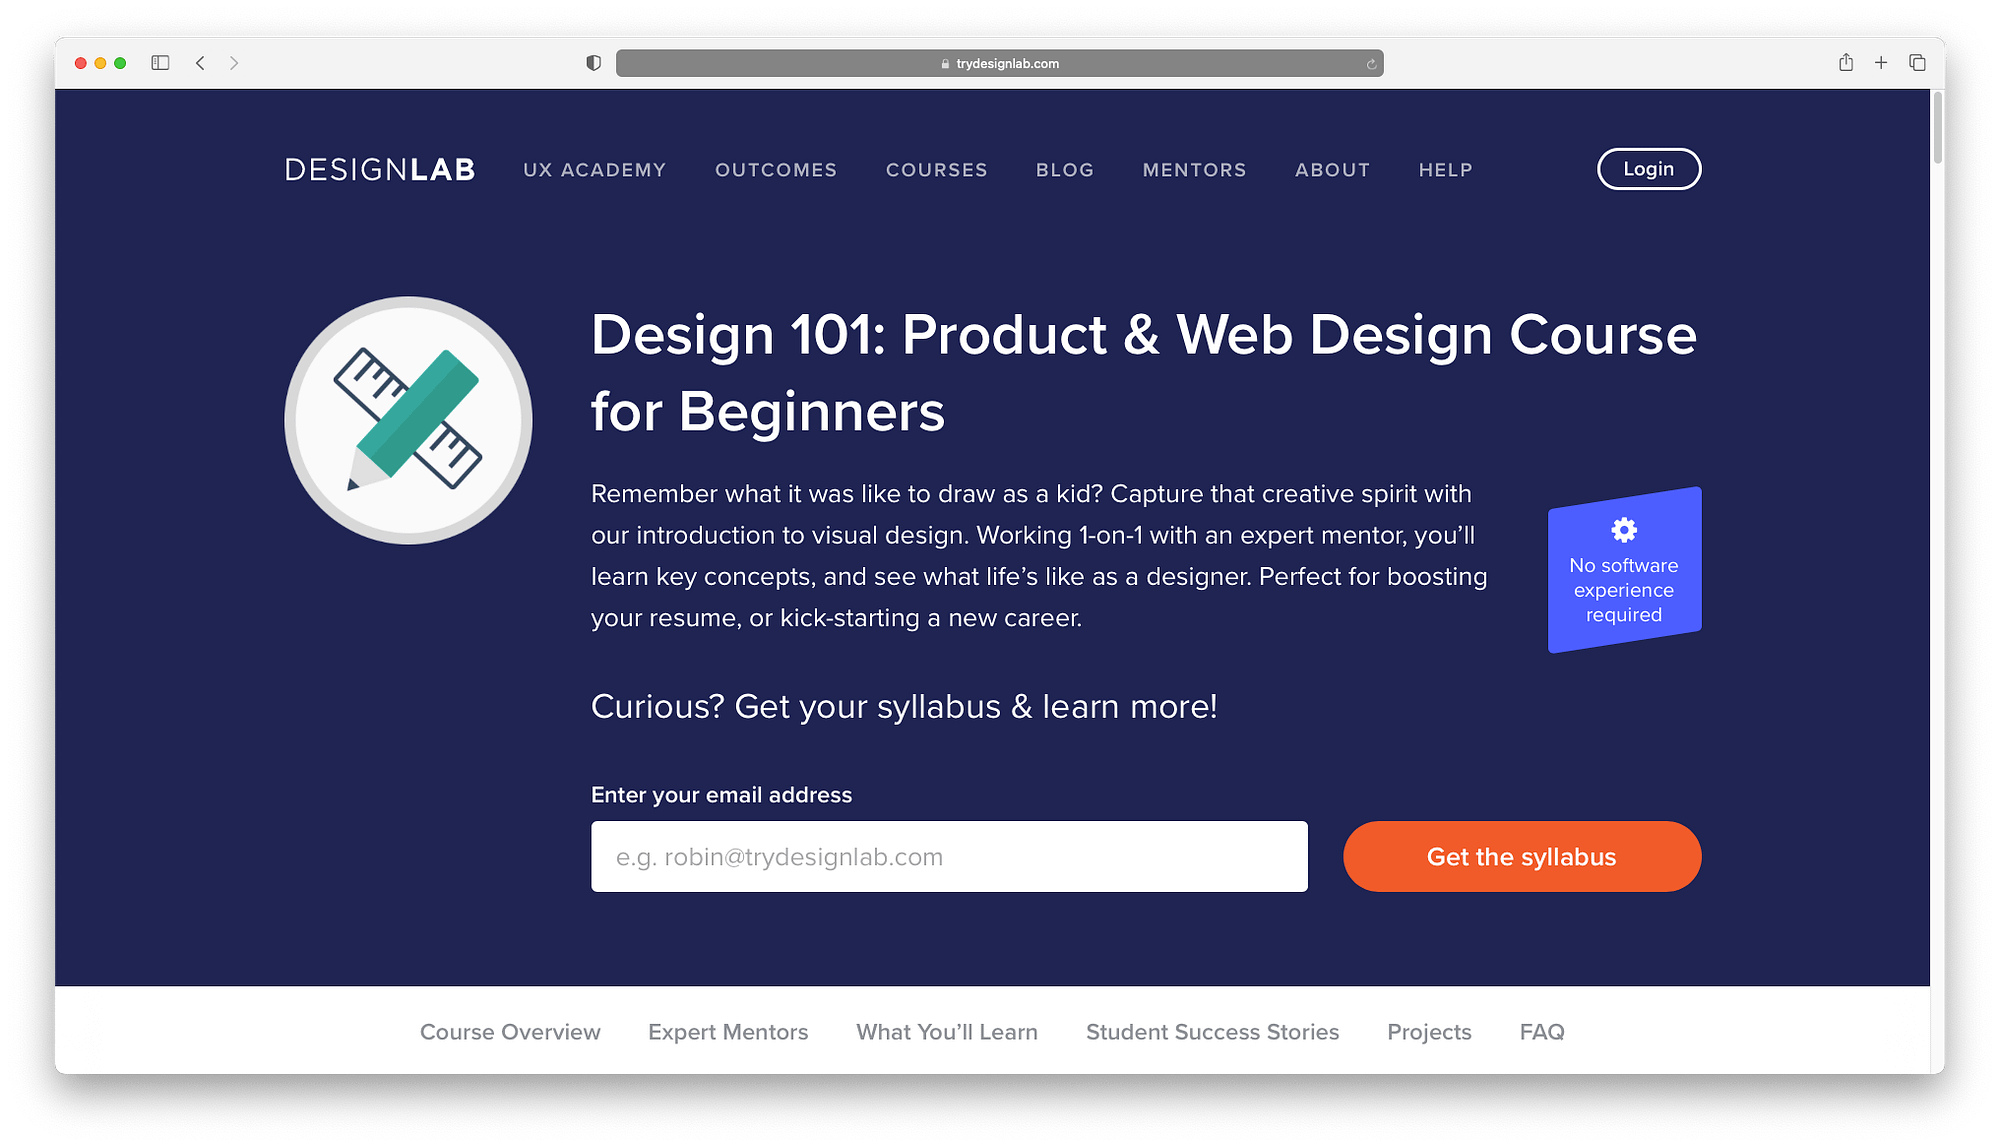 Aprenda diseño web en línea con este curso para principiantes de DesignLab